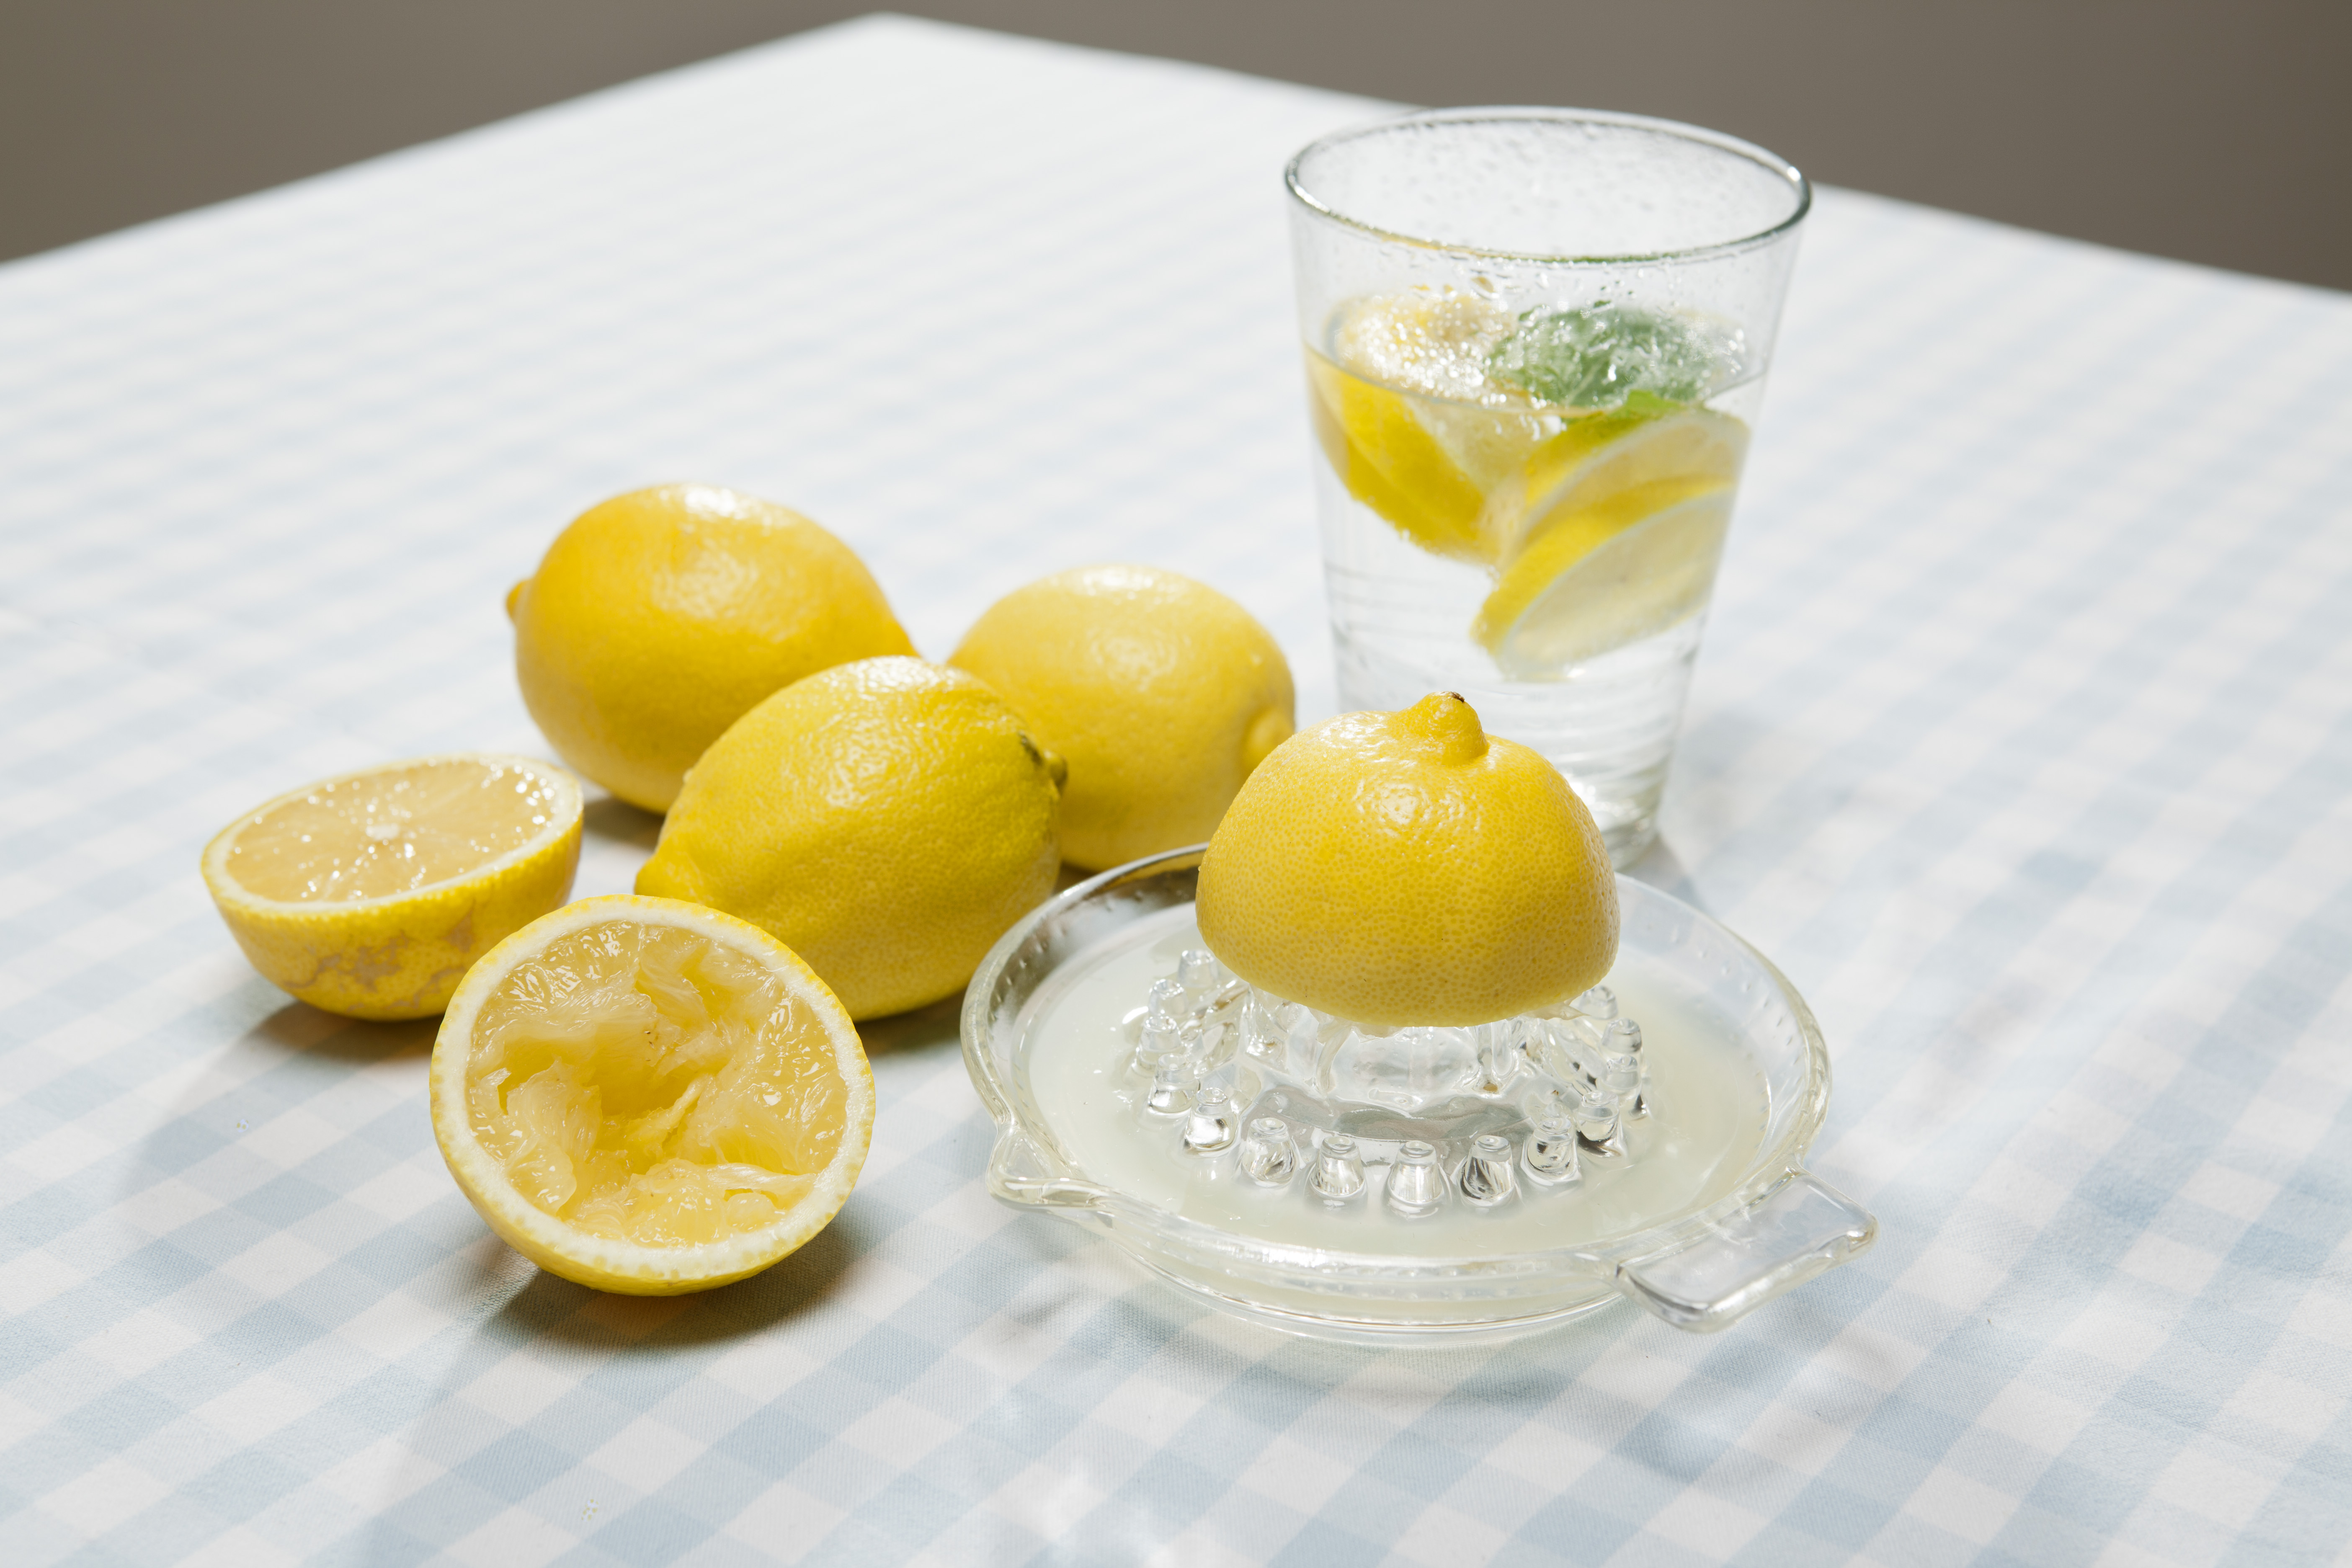 Можно пить лимонный сок